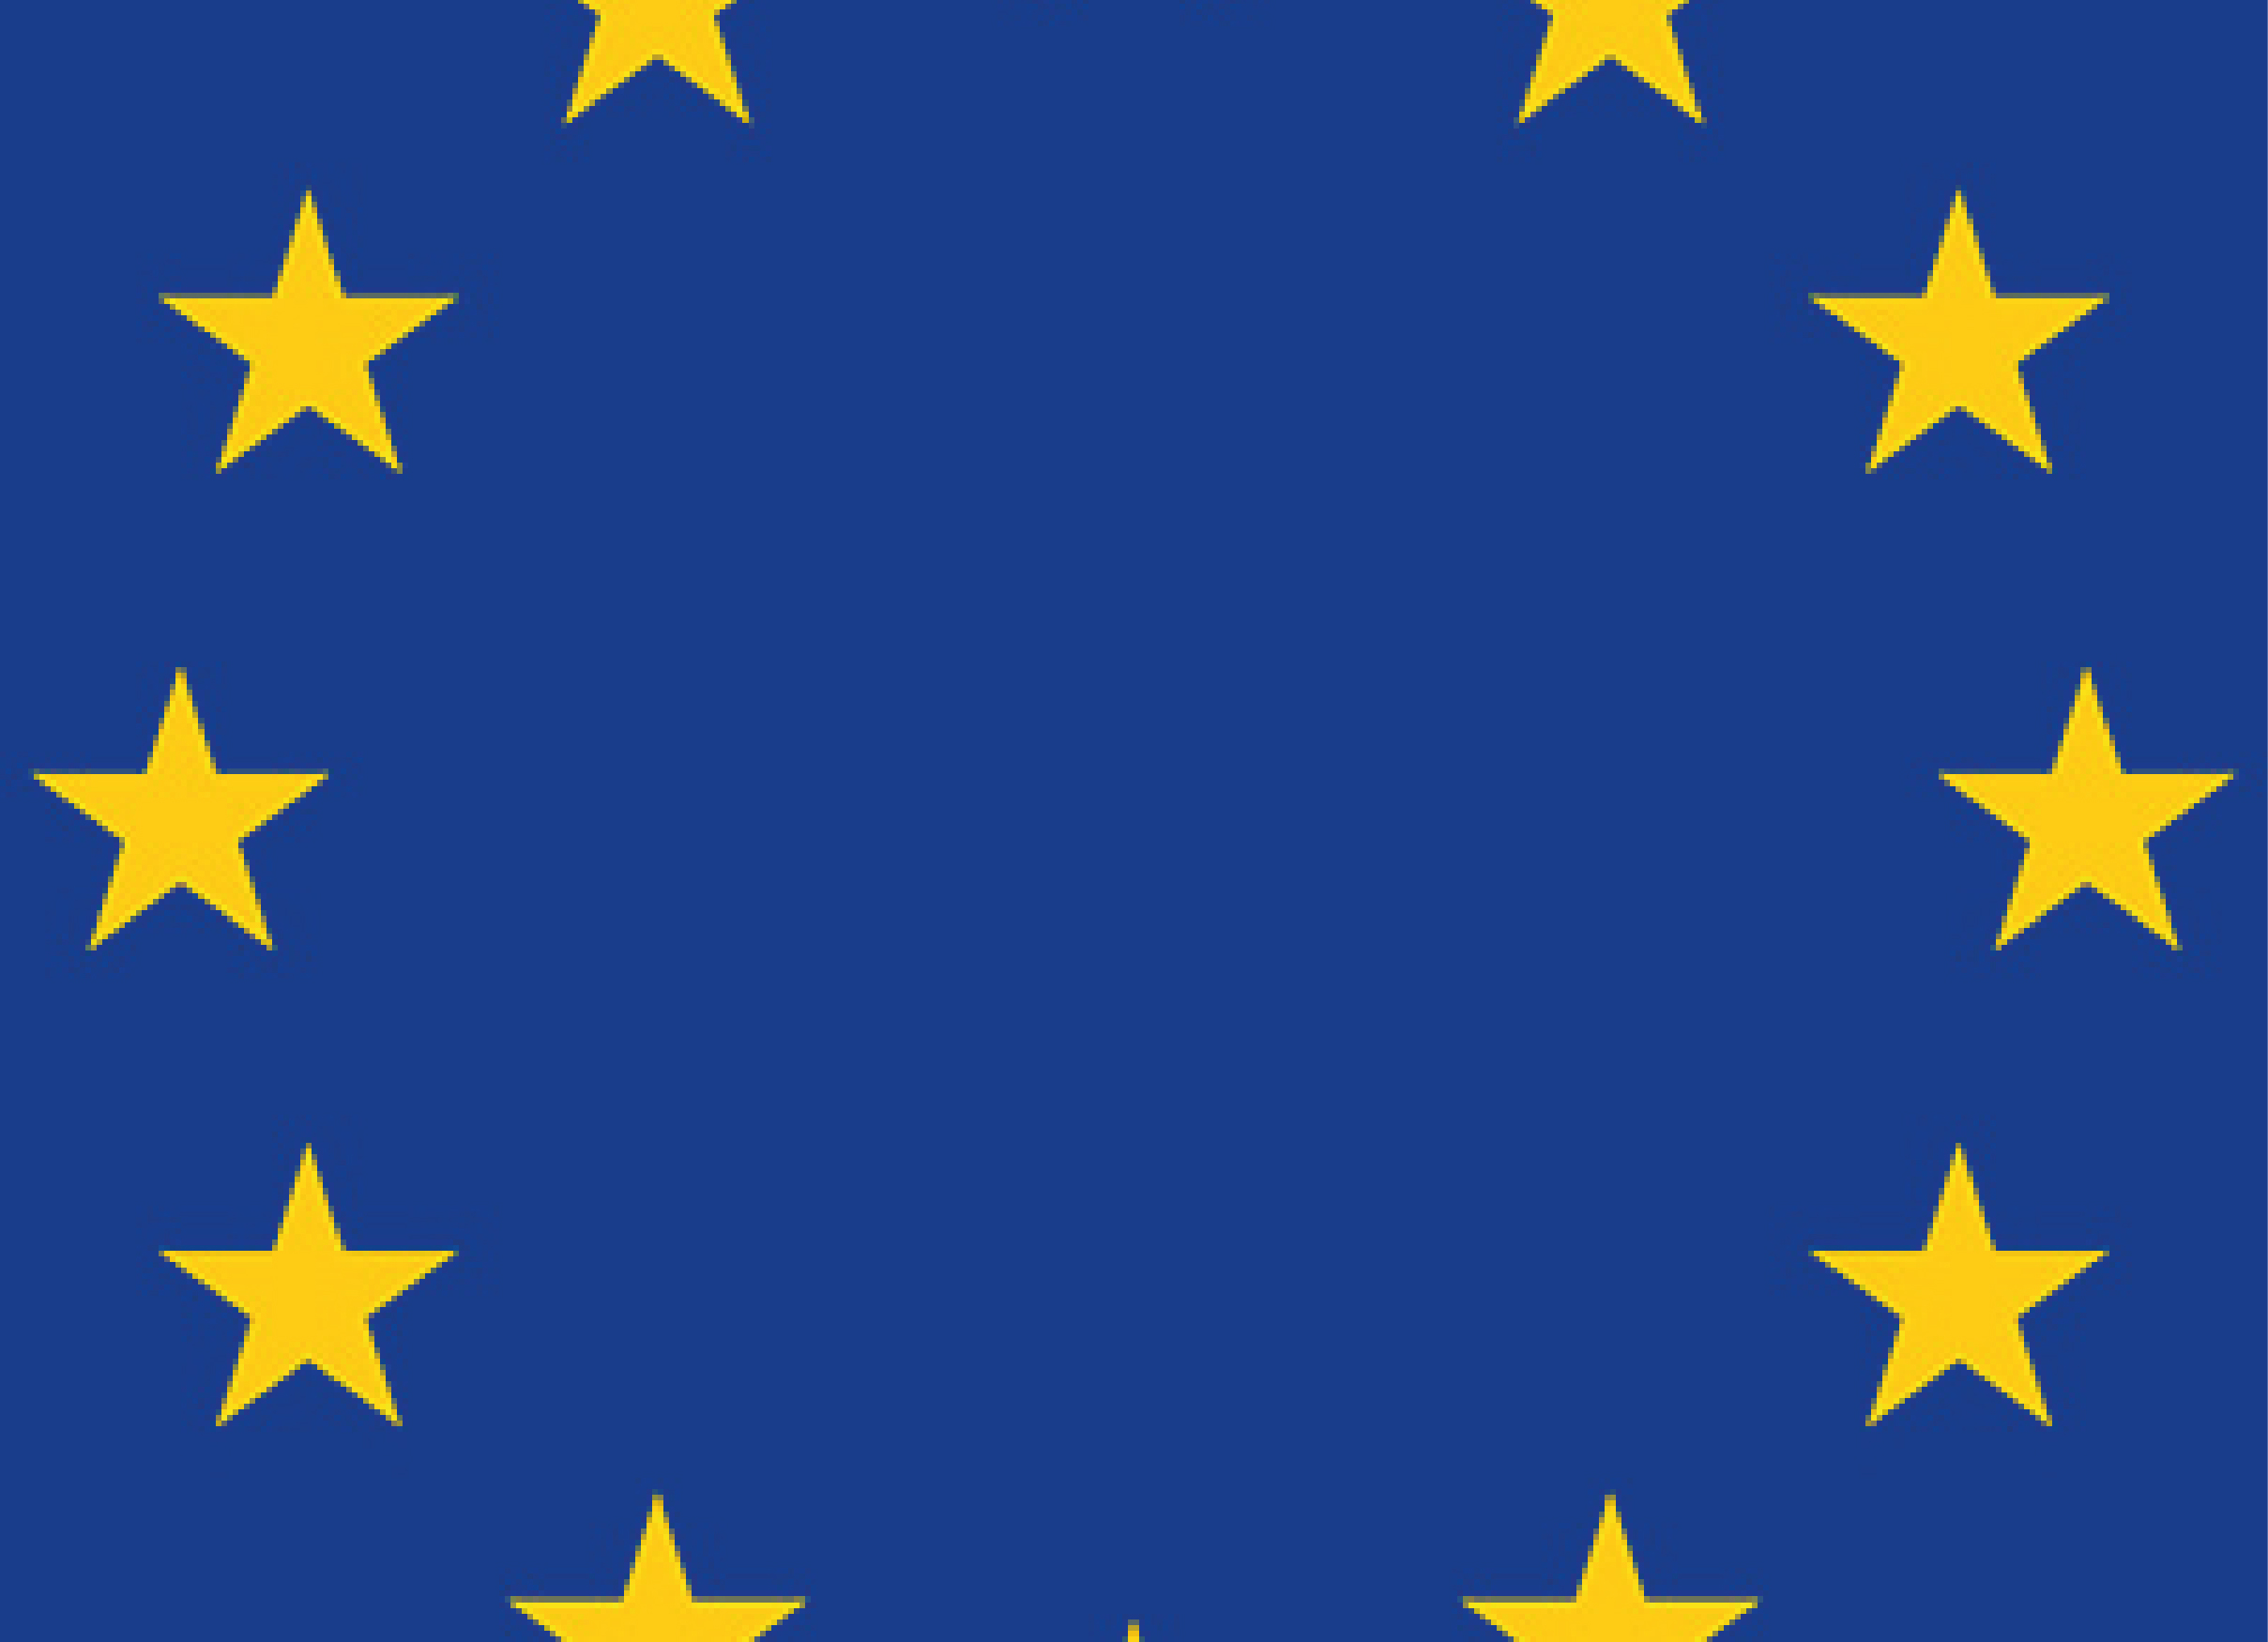 Europa ‘fuerte y soberana’